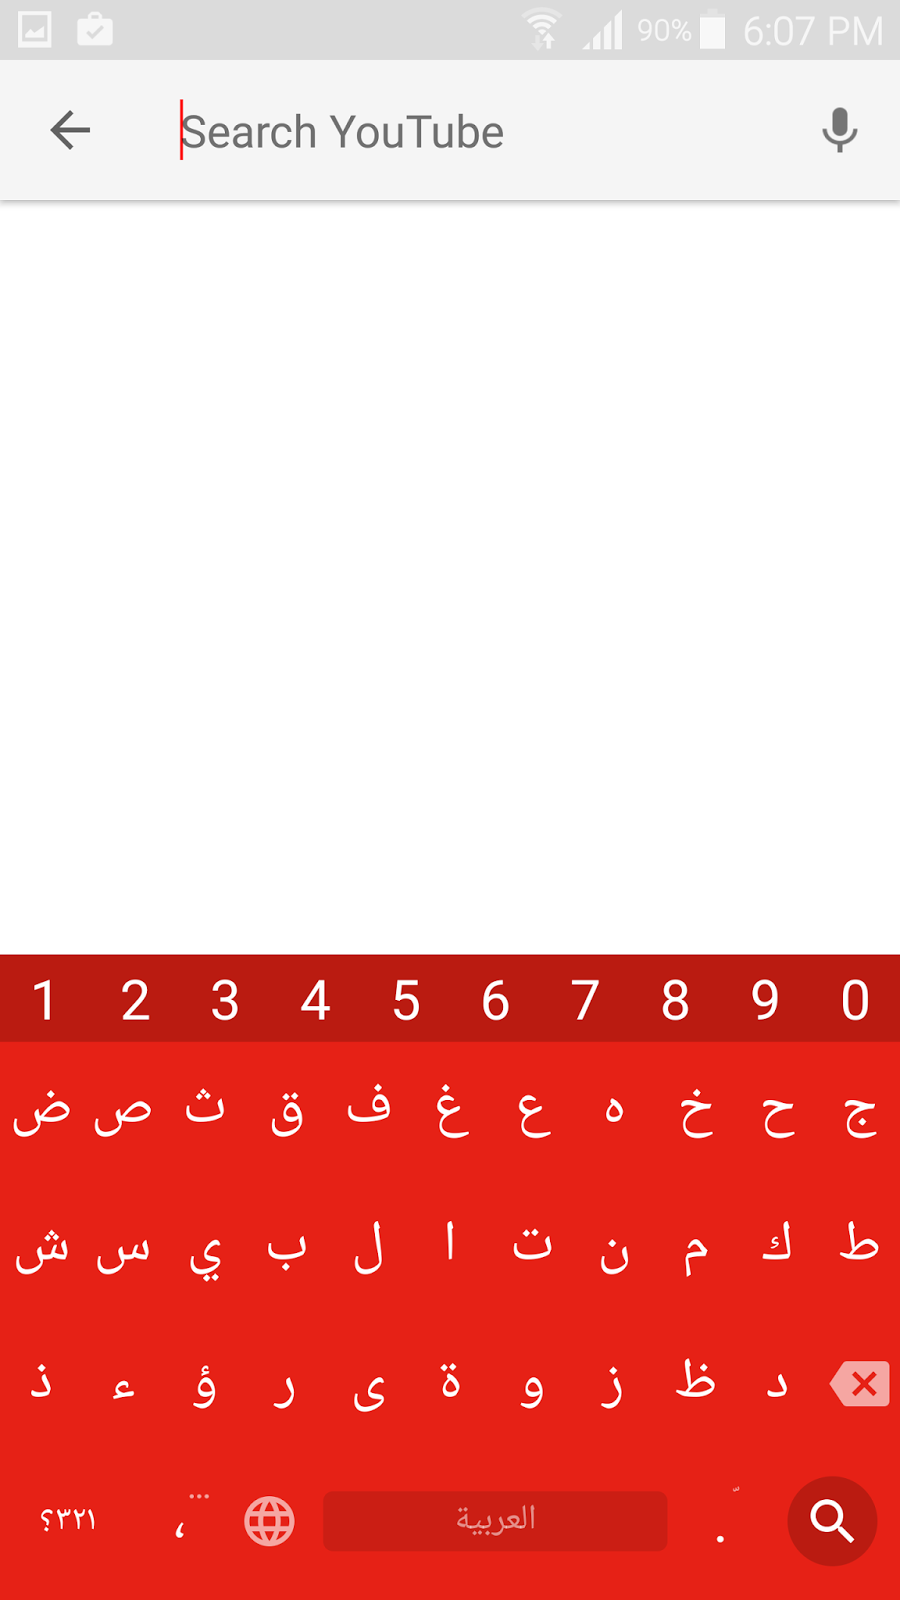 لوحة مفاتيح Chrooma كيبورد عجيب يتغير لونها كالحرباء | بحرية درويد